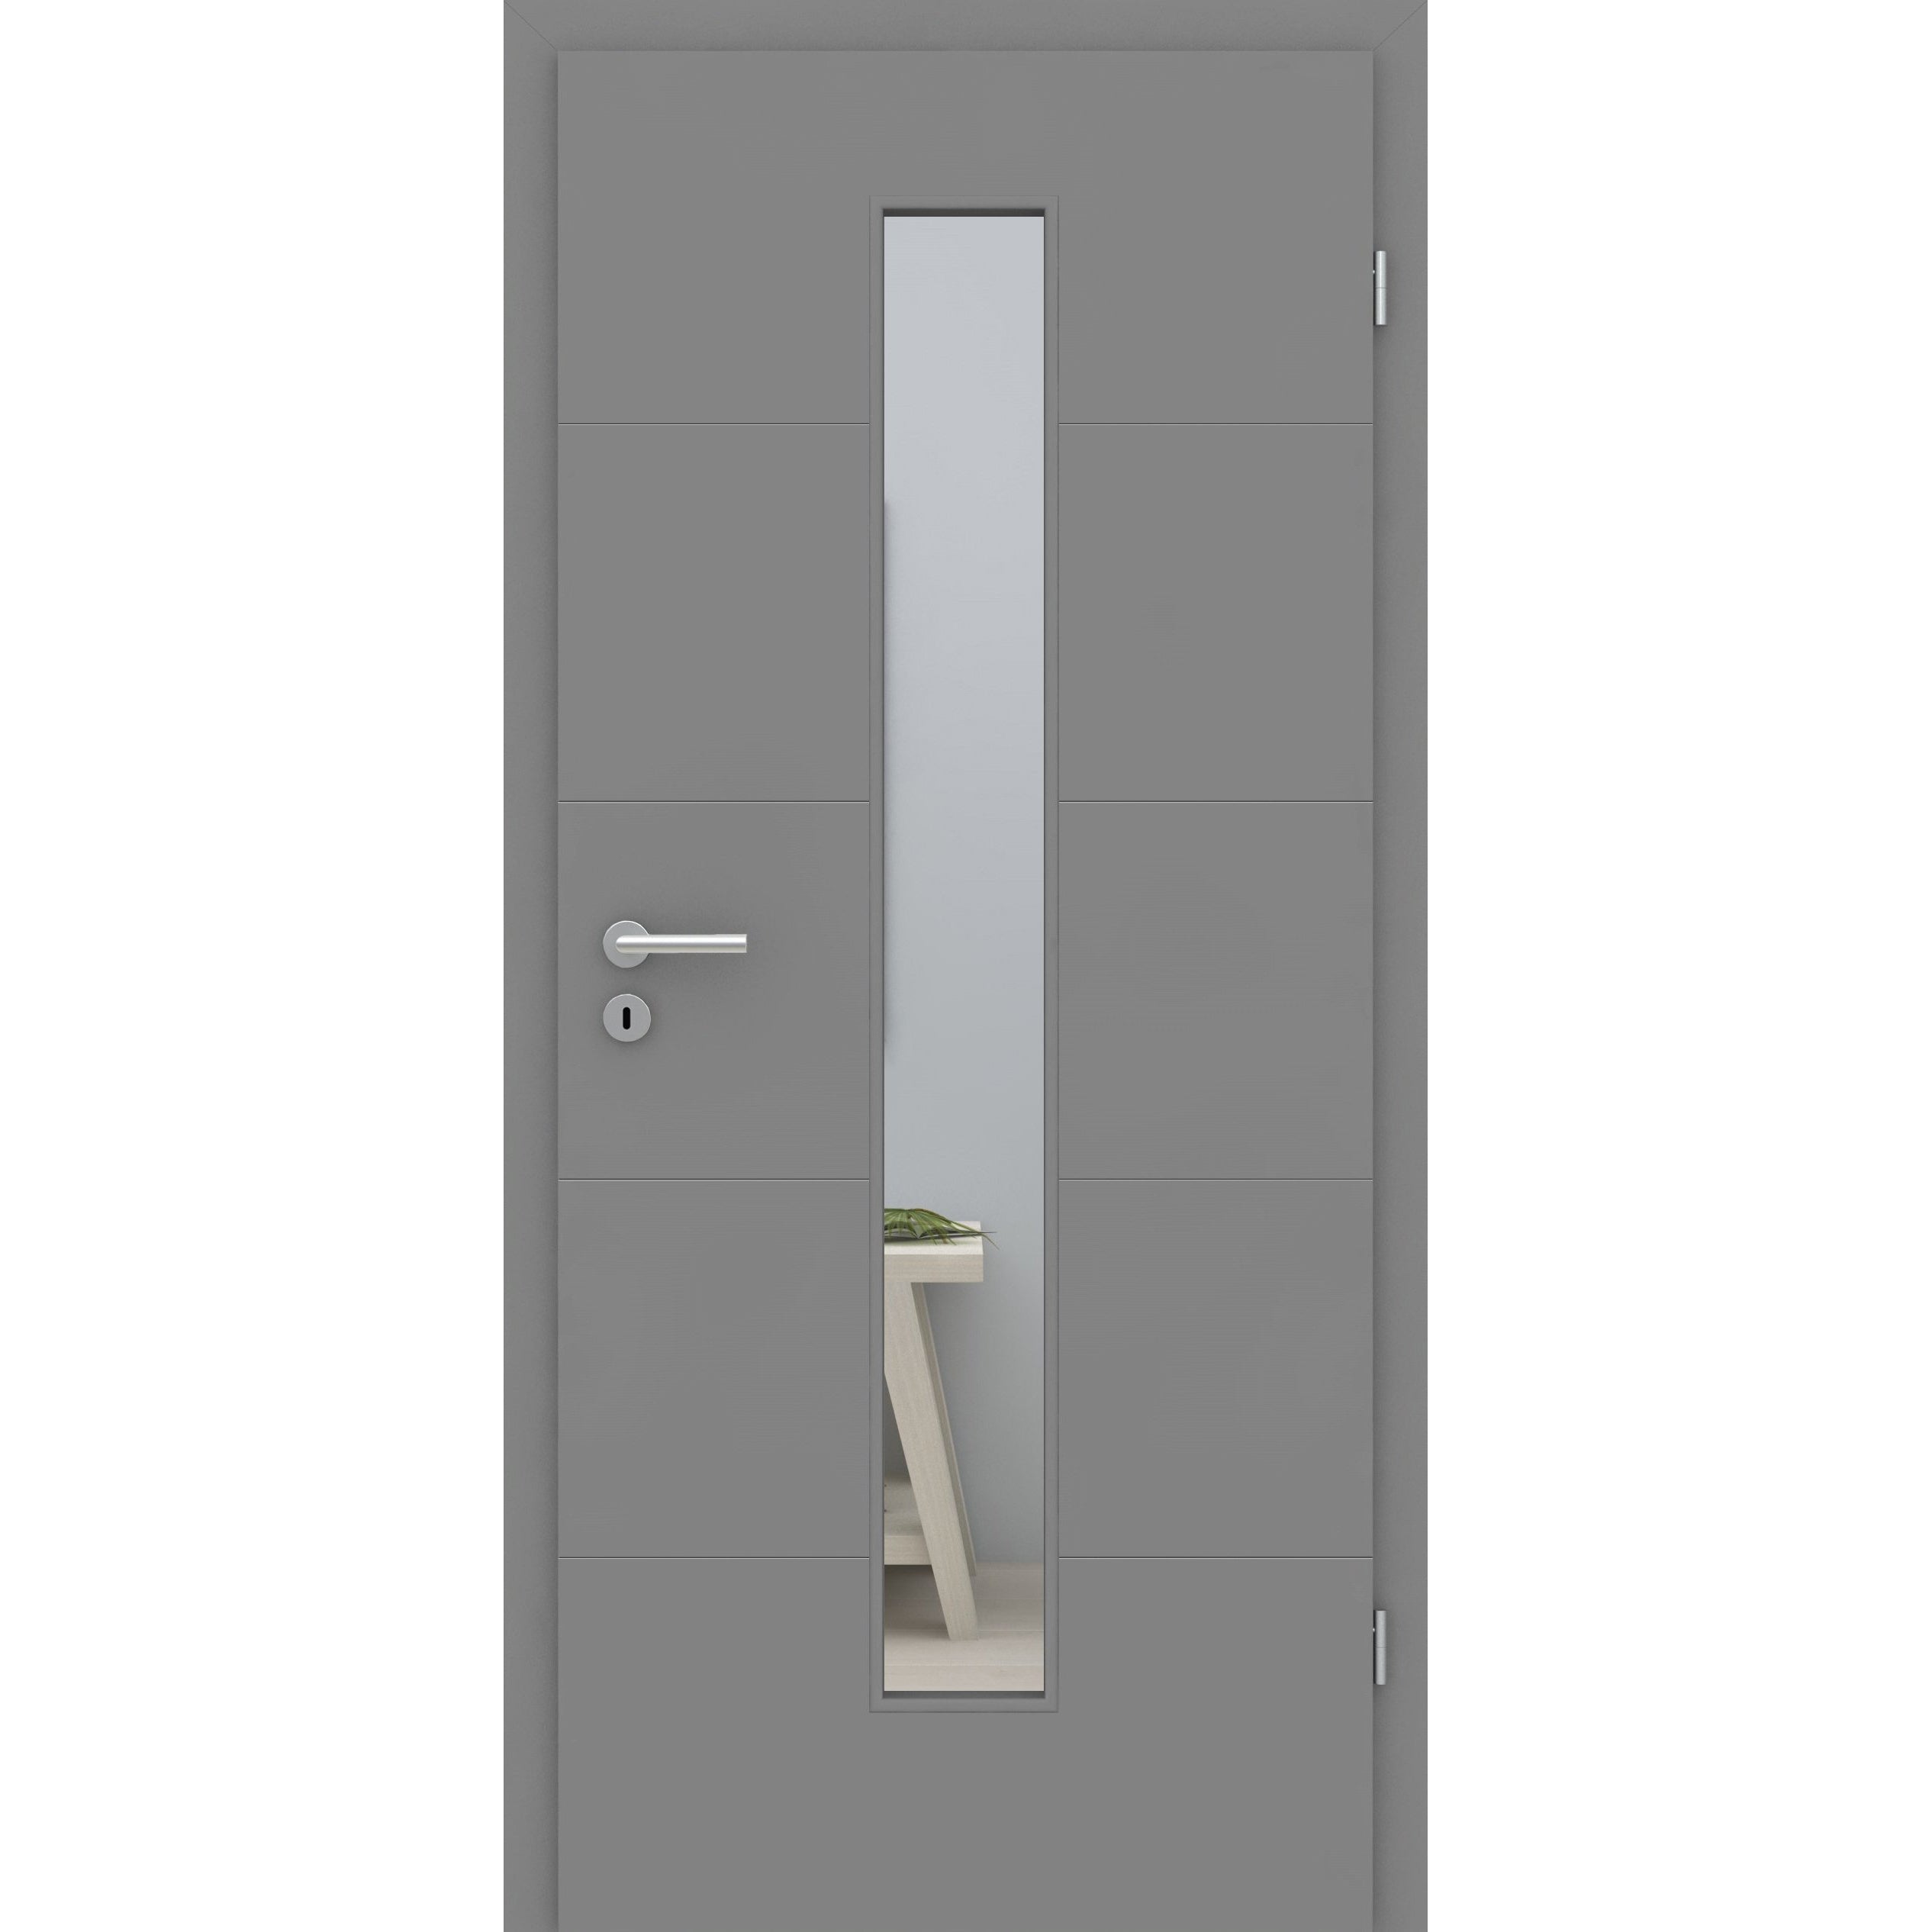 Zimmertür mit Lichtausschnitt grau 4 Rillen quer Designkante - Modell Designtür Q47LAM